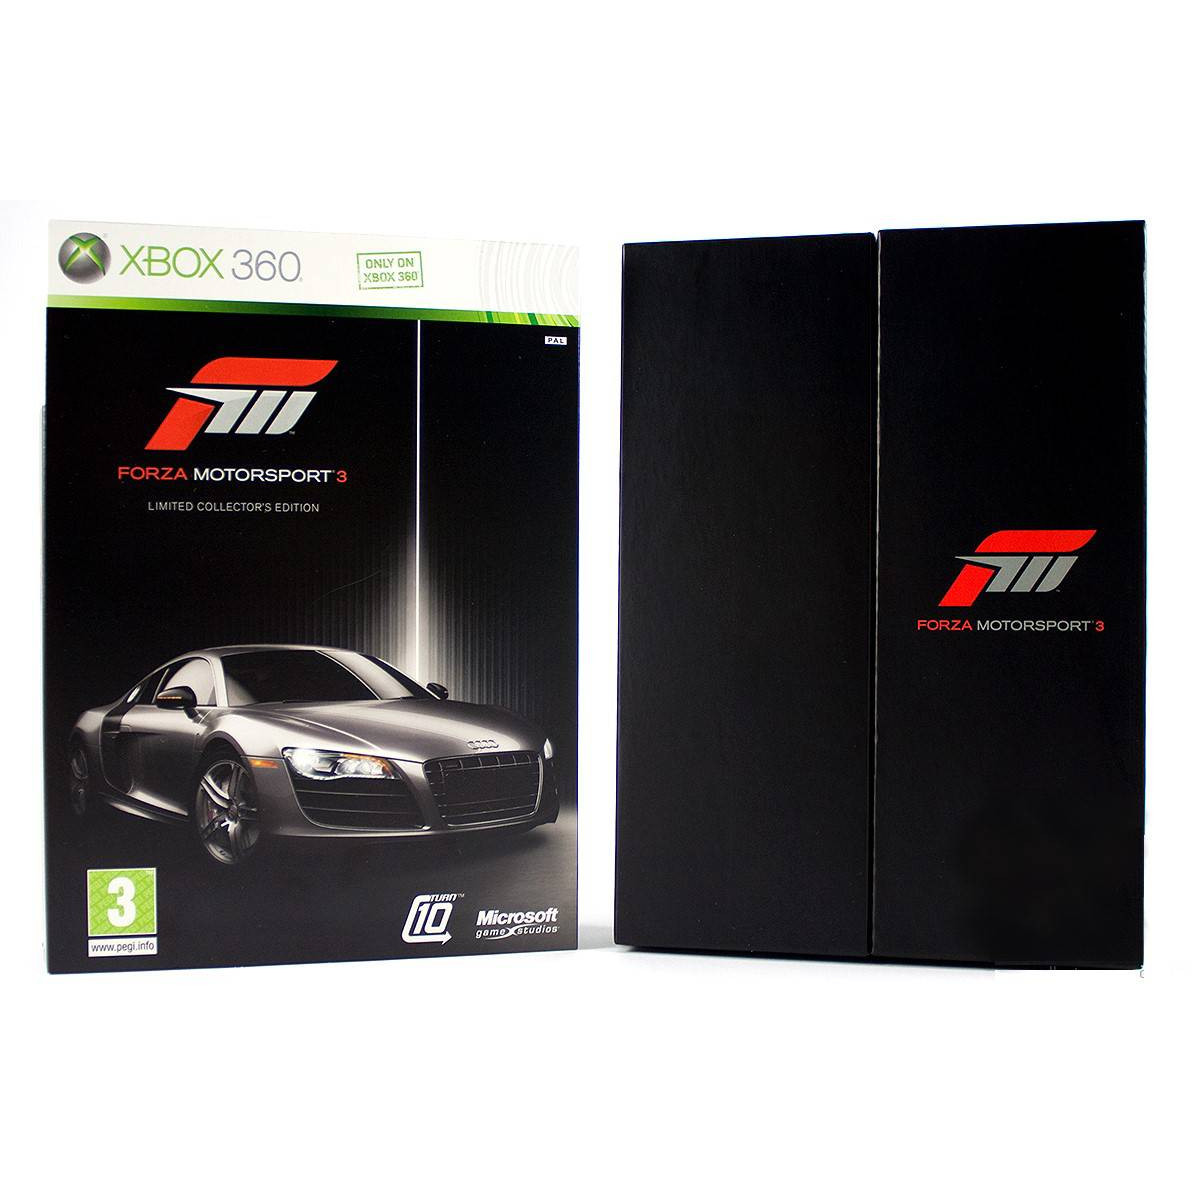 Forza Motorsport 3 Limited Collectors Edition (német doboz - pendrive, kulcstartó nélkül) - Xbox 360 Játékok